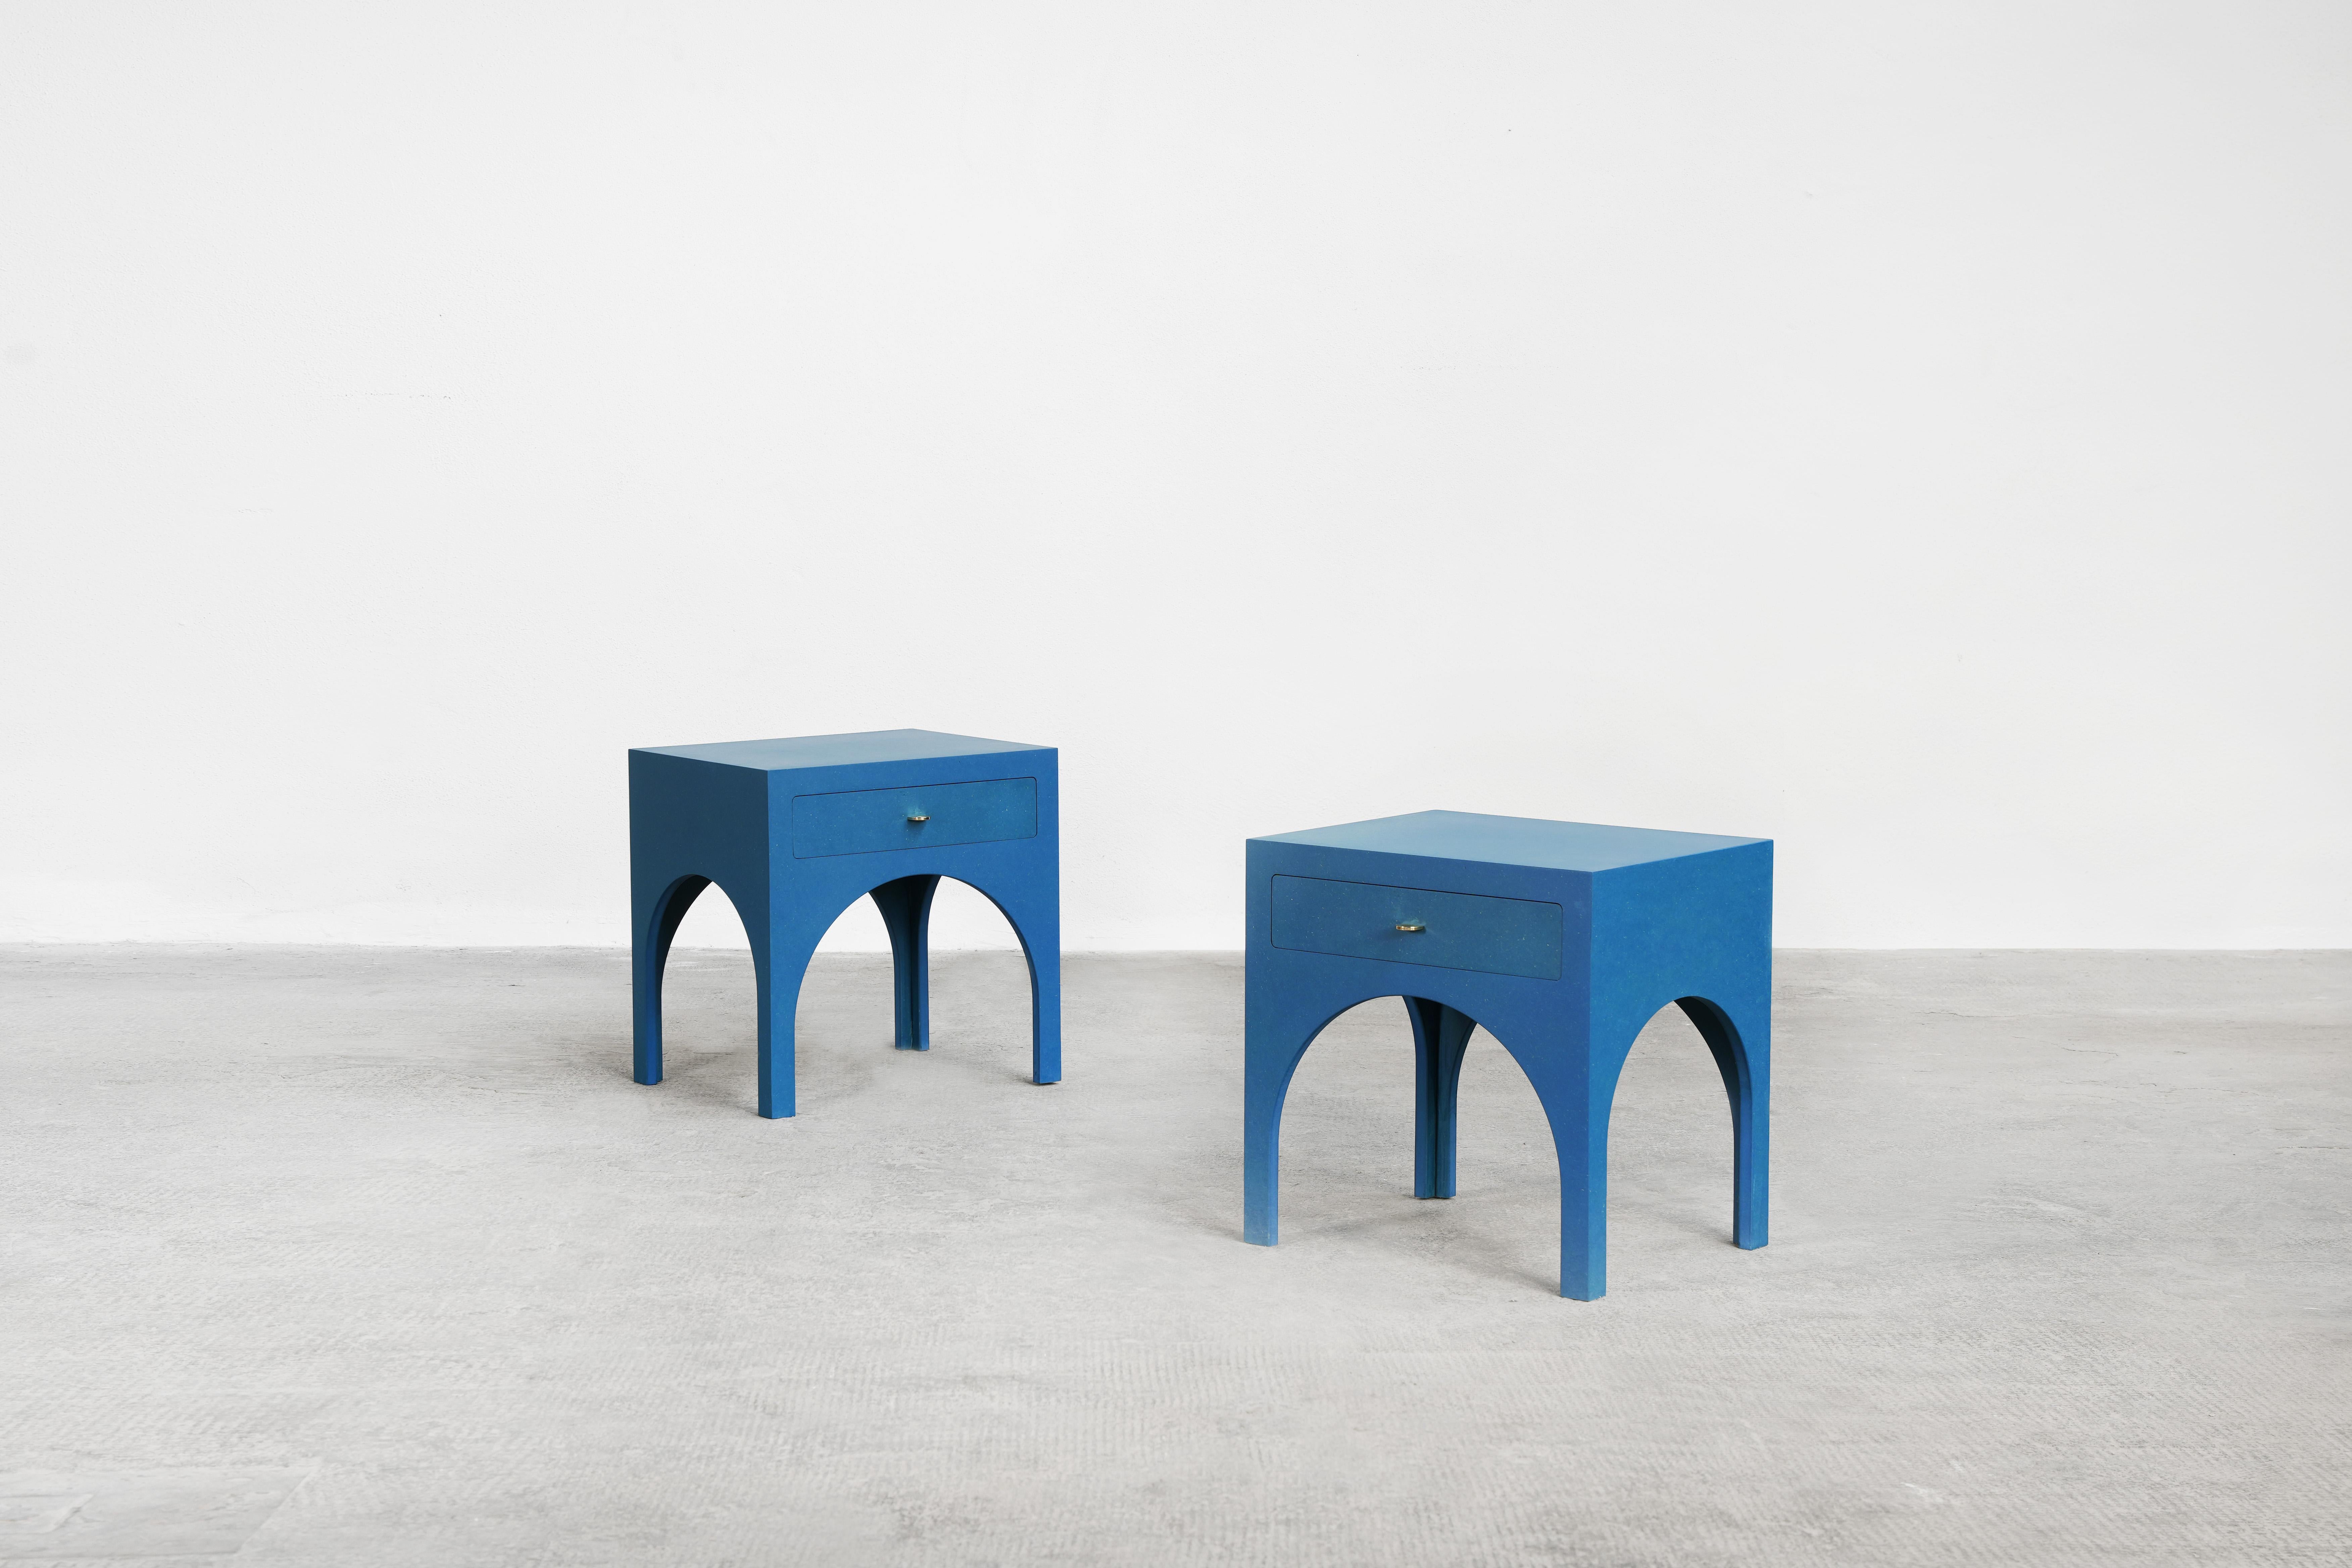 Ein schönes Paar Nachttische, entworfen von Yuzo Bachmann für Atelier Bachmann, handgefertigt in Deutschland, 2019.
Diese Nachttische sind aus blauem Valchromat und Messinggriffen gefertigt. Mit natürlichem Möbelwachs veredelt.

Auf Bestellung